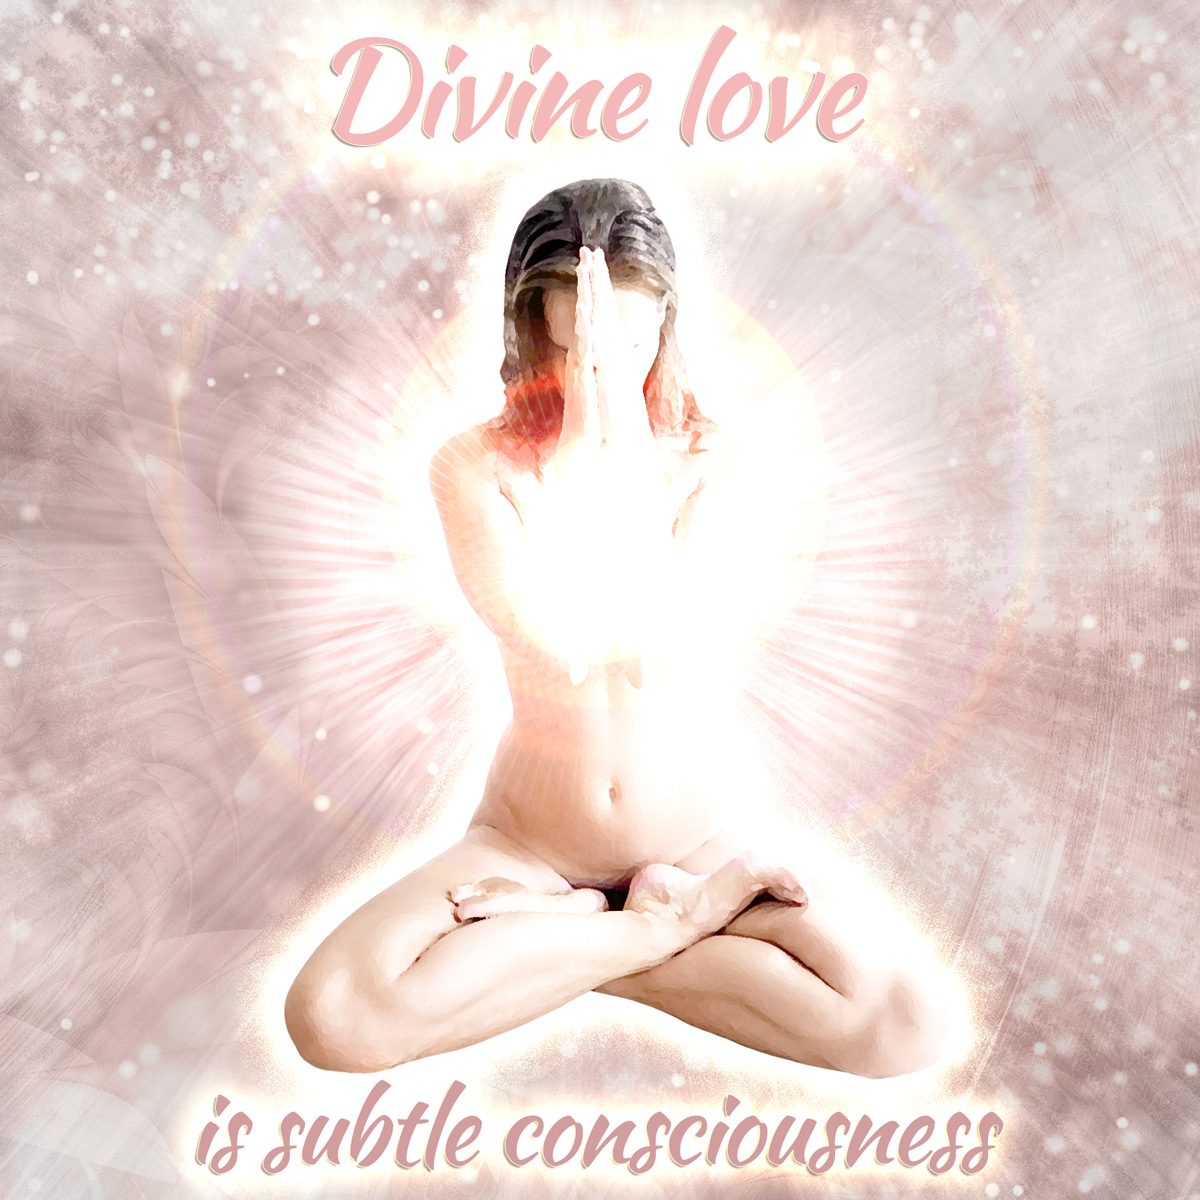 Divine love is subtle consciousness